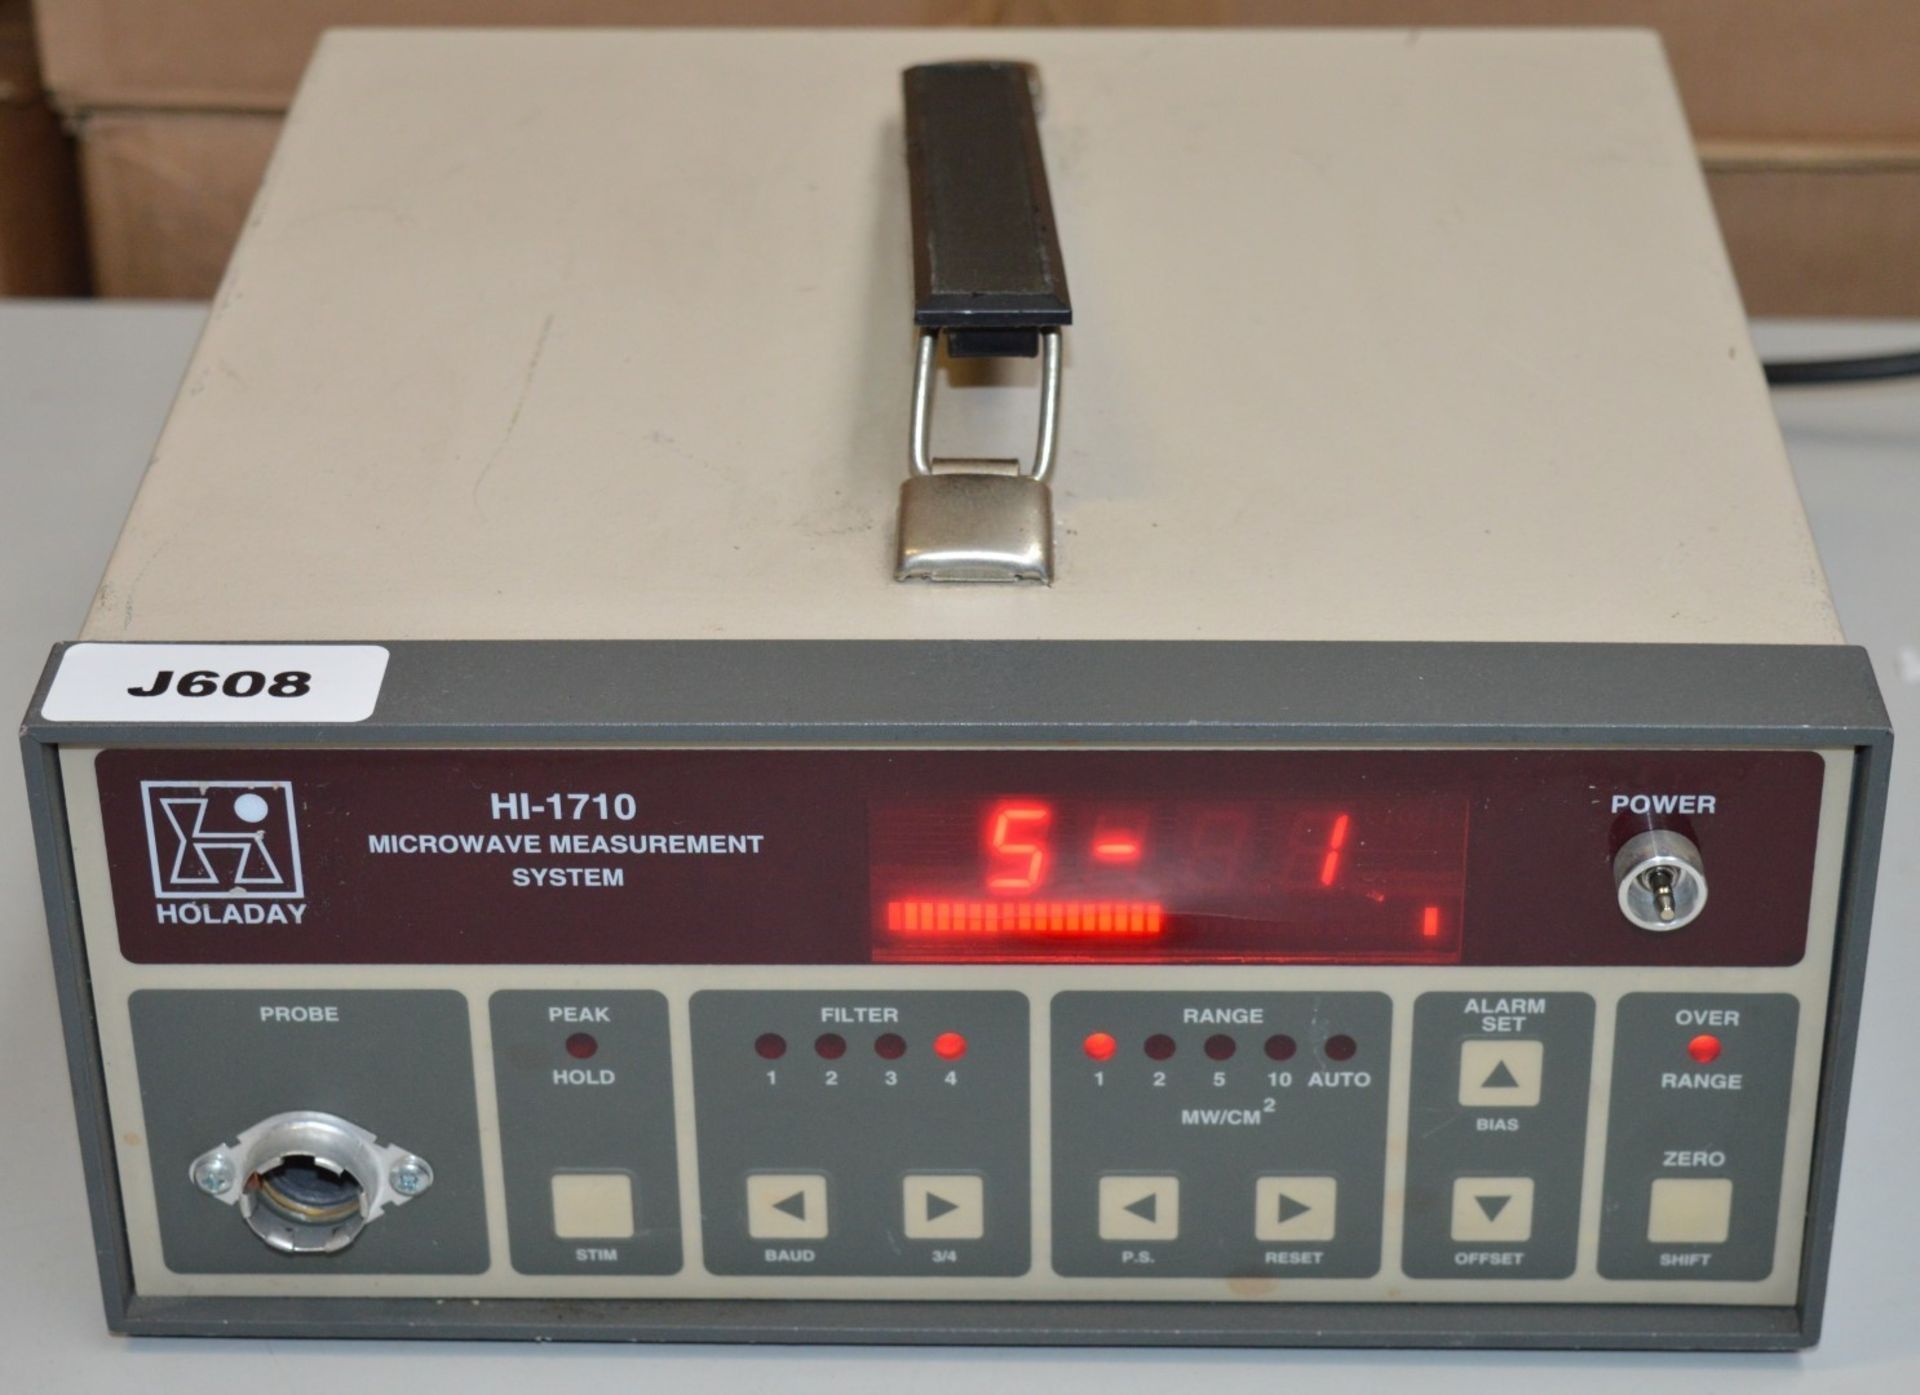 1 HOLDAY Microwave Measurement System - Model HI-1710 - Vintage Test Equipment - CL011 - Ref - Image 2 of 6